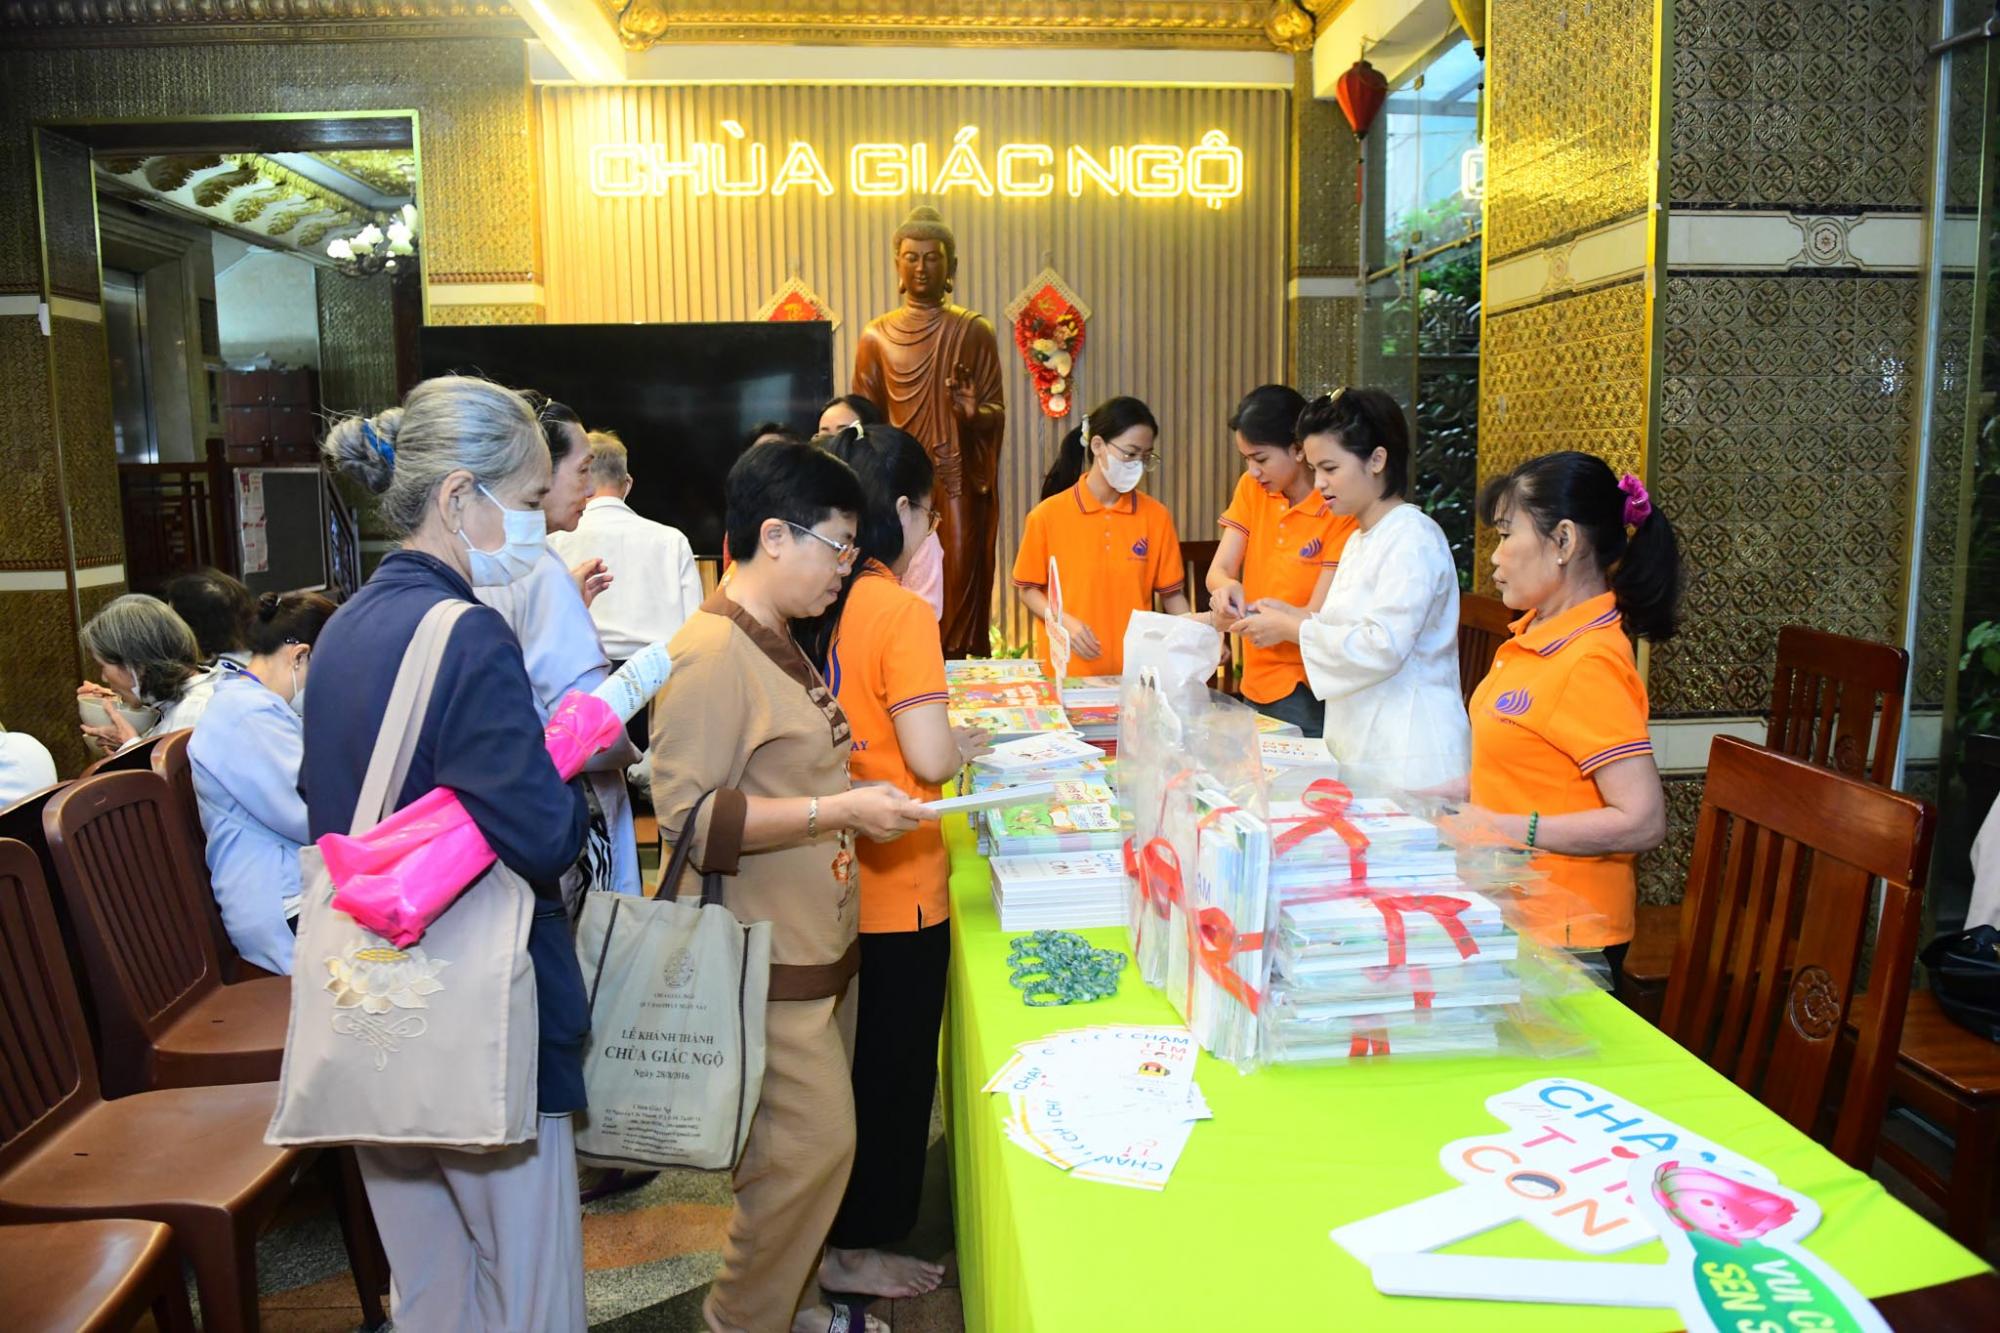 Gần 1000 người tham dự lễ ra mắt sách"Chạm Đến Tim Con" - Hành trình trở thành cha mẹ tỉnh thức của tác giả Thượng toạ Thích Nhật Từ